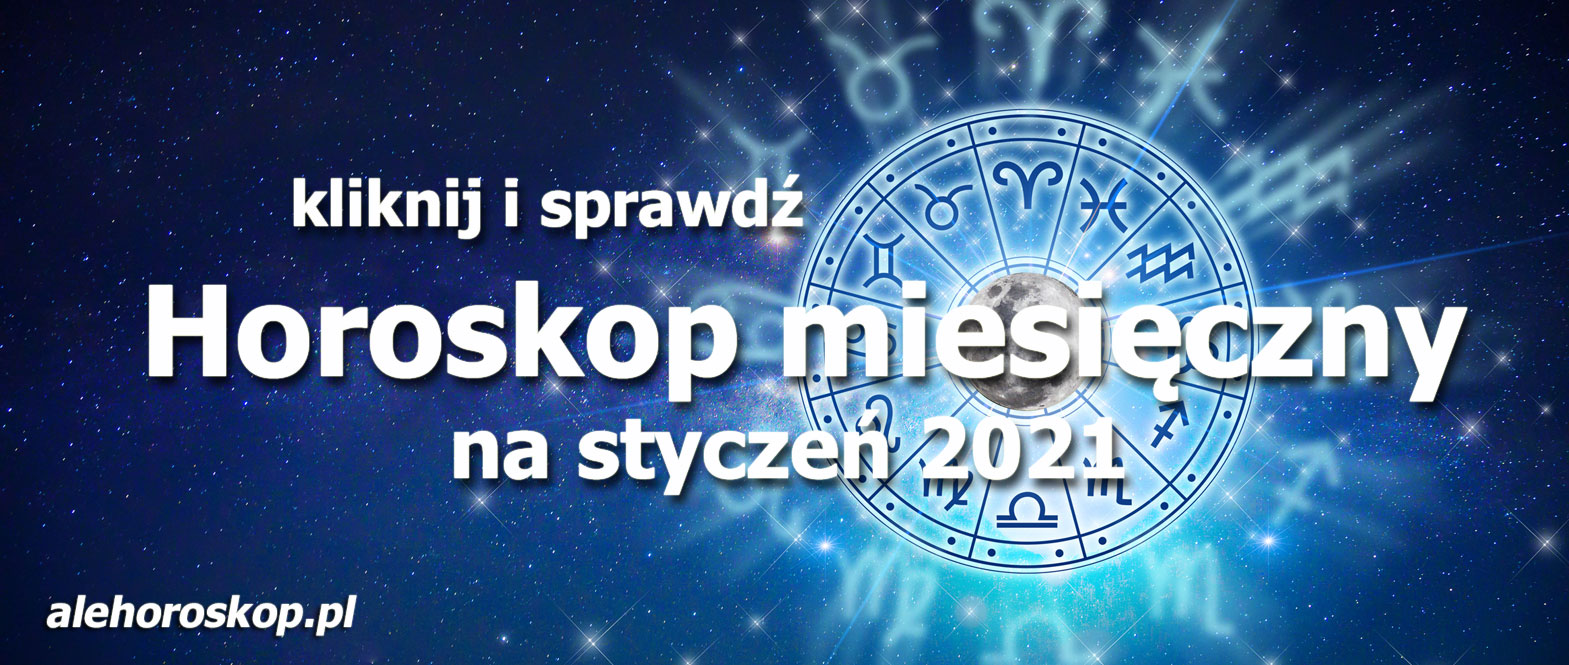 horoskop miesięczny styczeń 2021